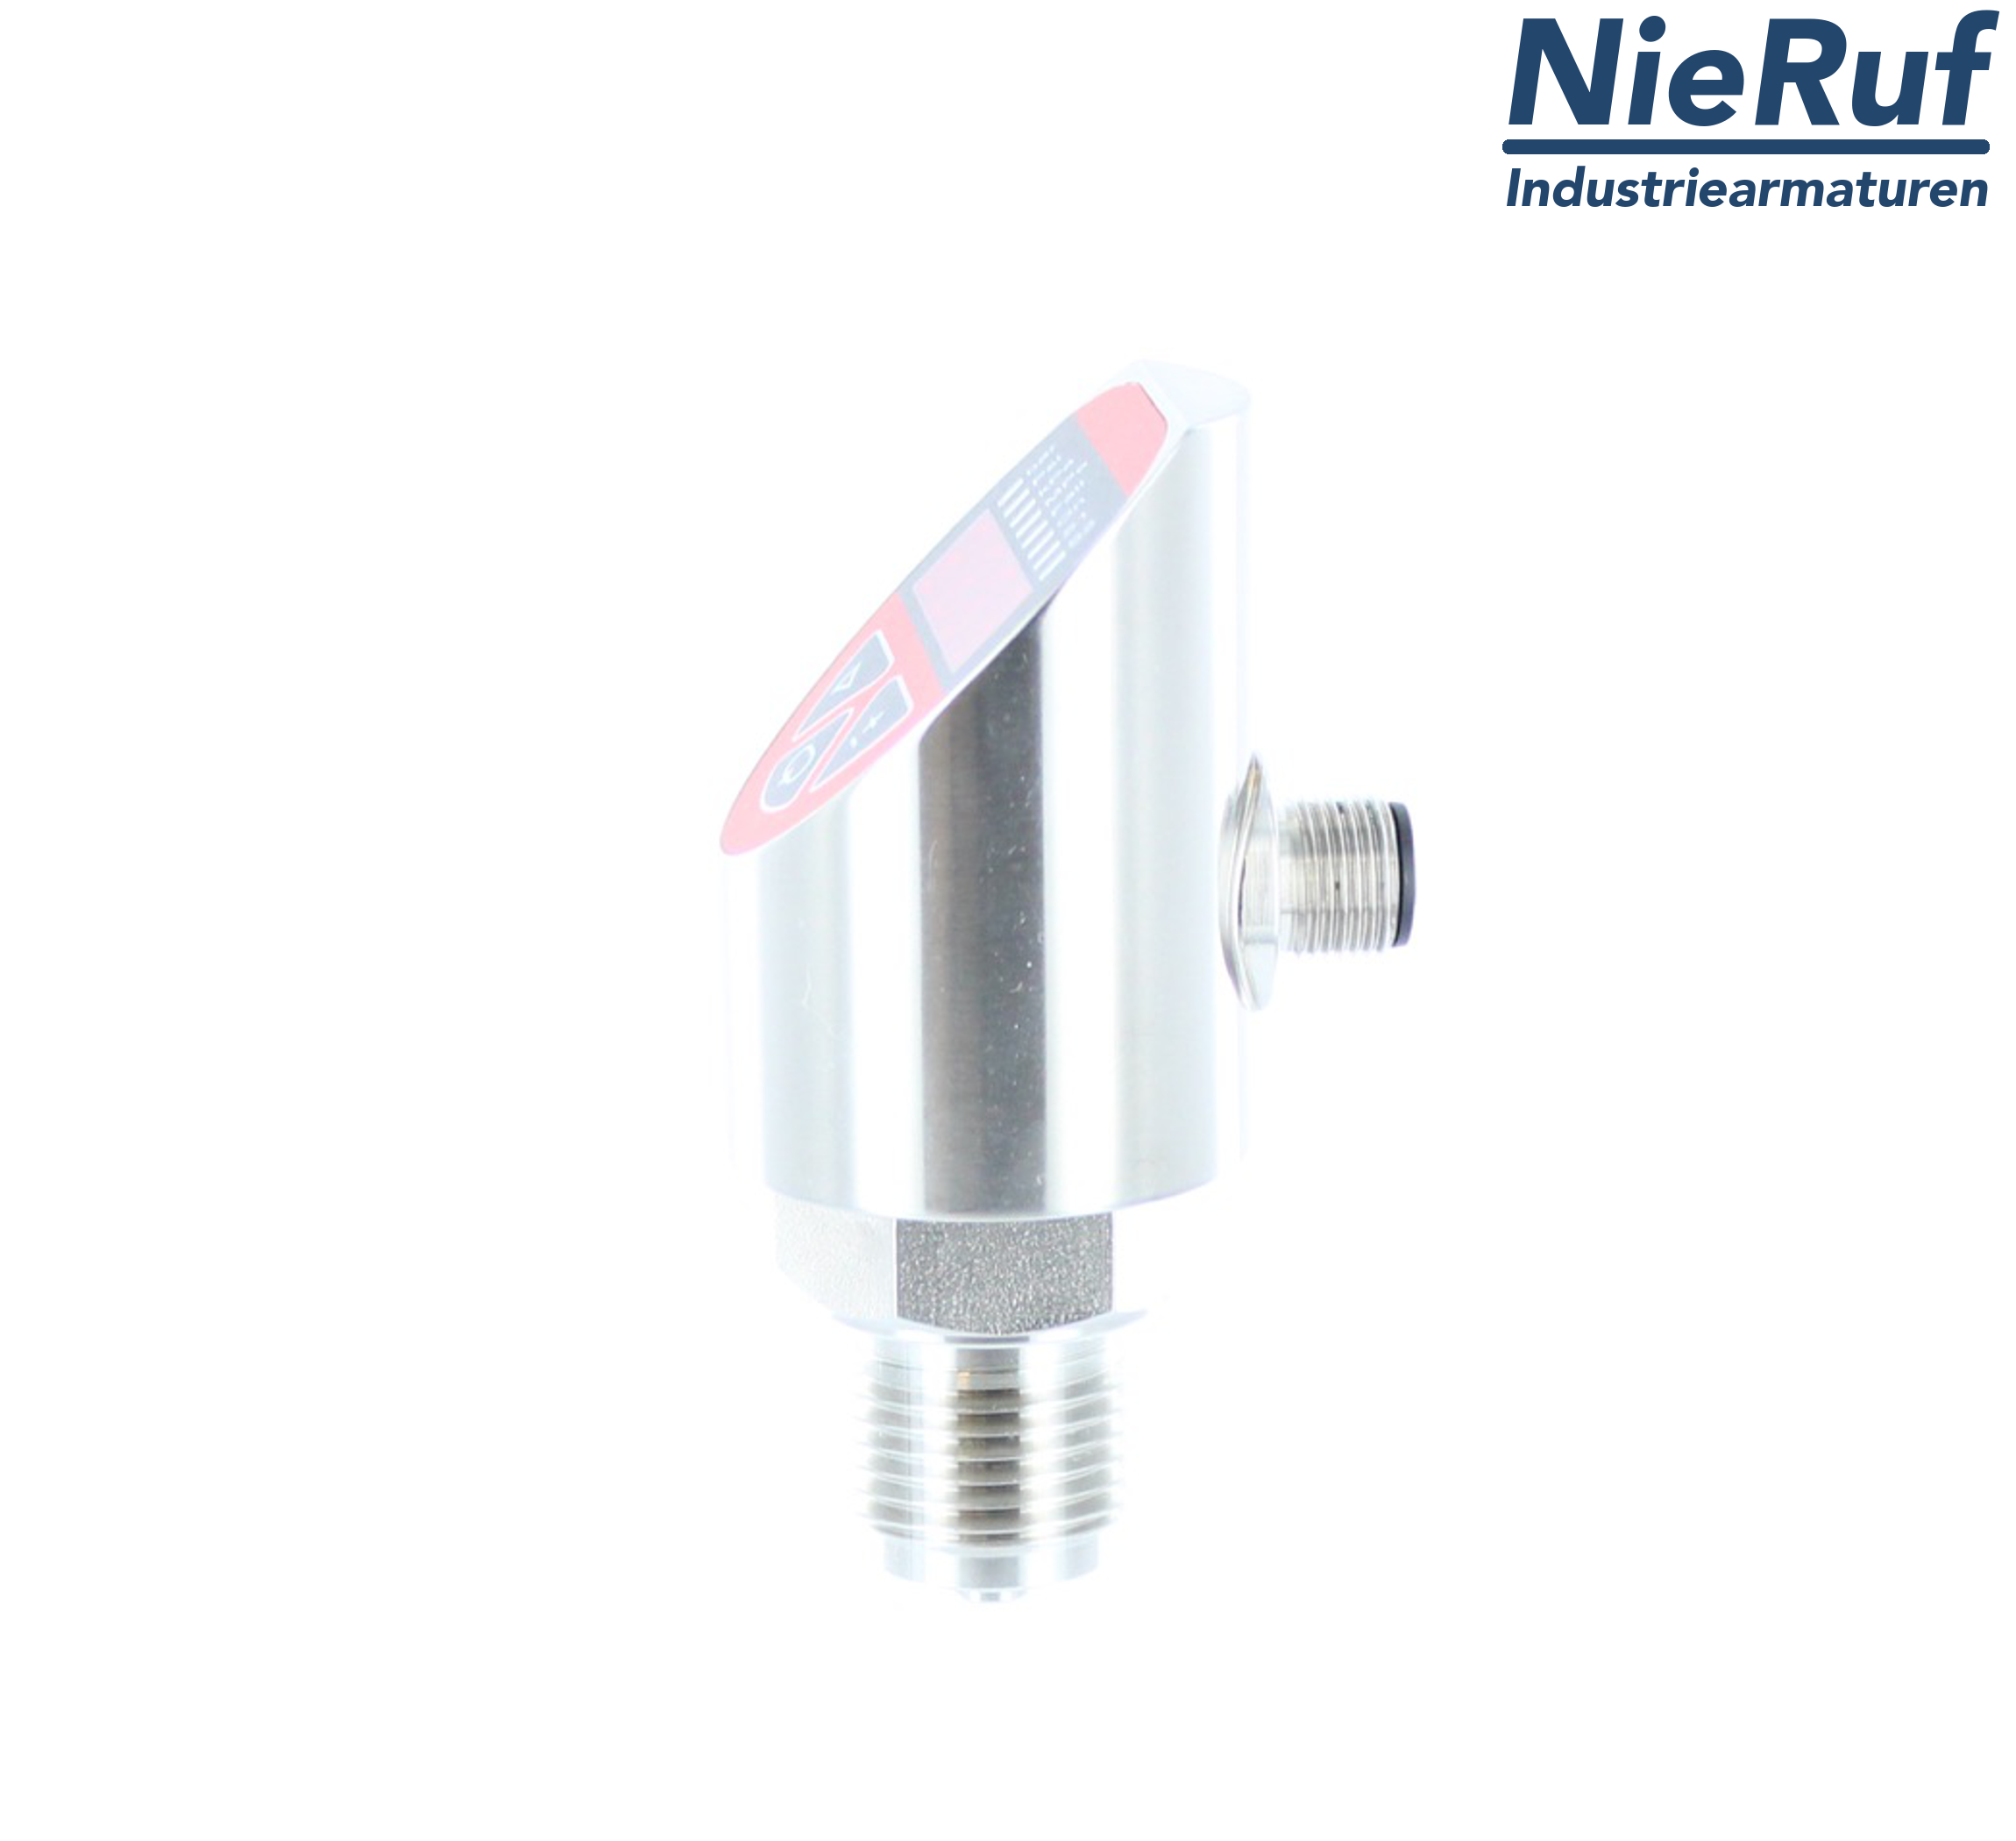 digital pressure sensor G 1/4" B 5-wire: 2xPNP, 1x4 - 20mA FPM 0,0 - 0,40 bar